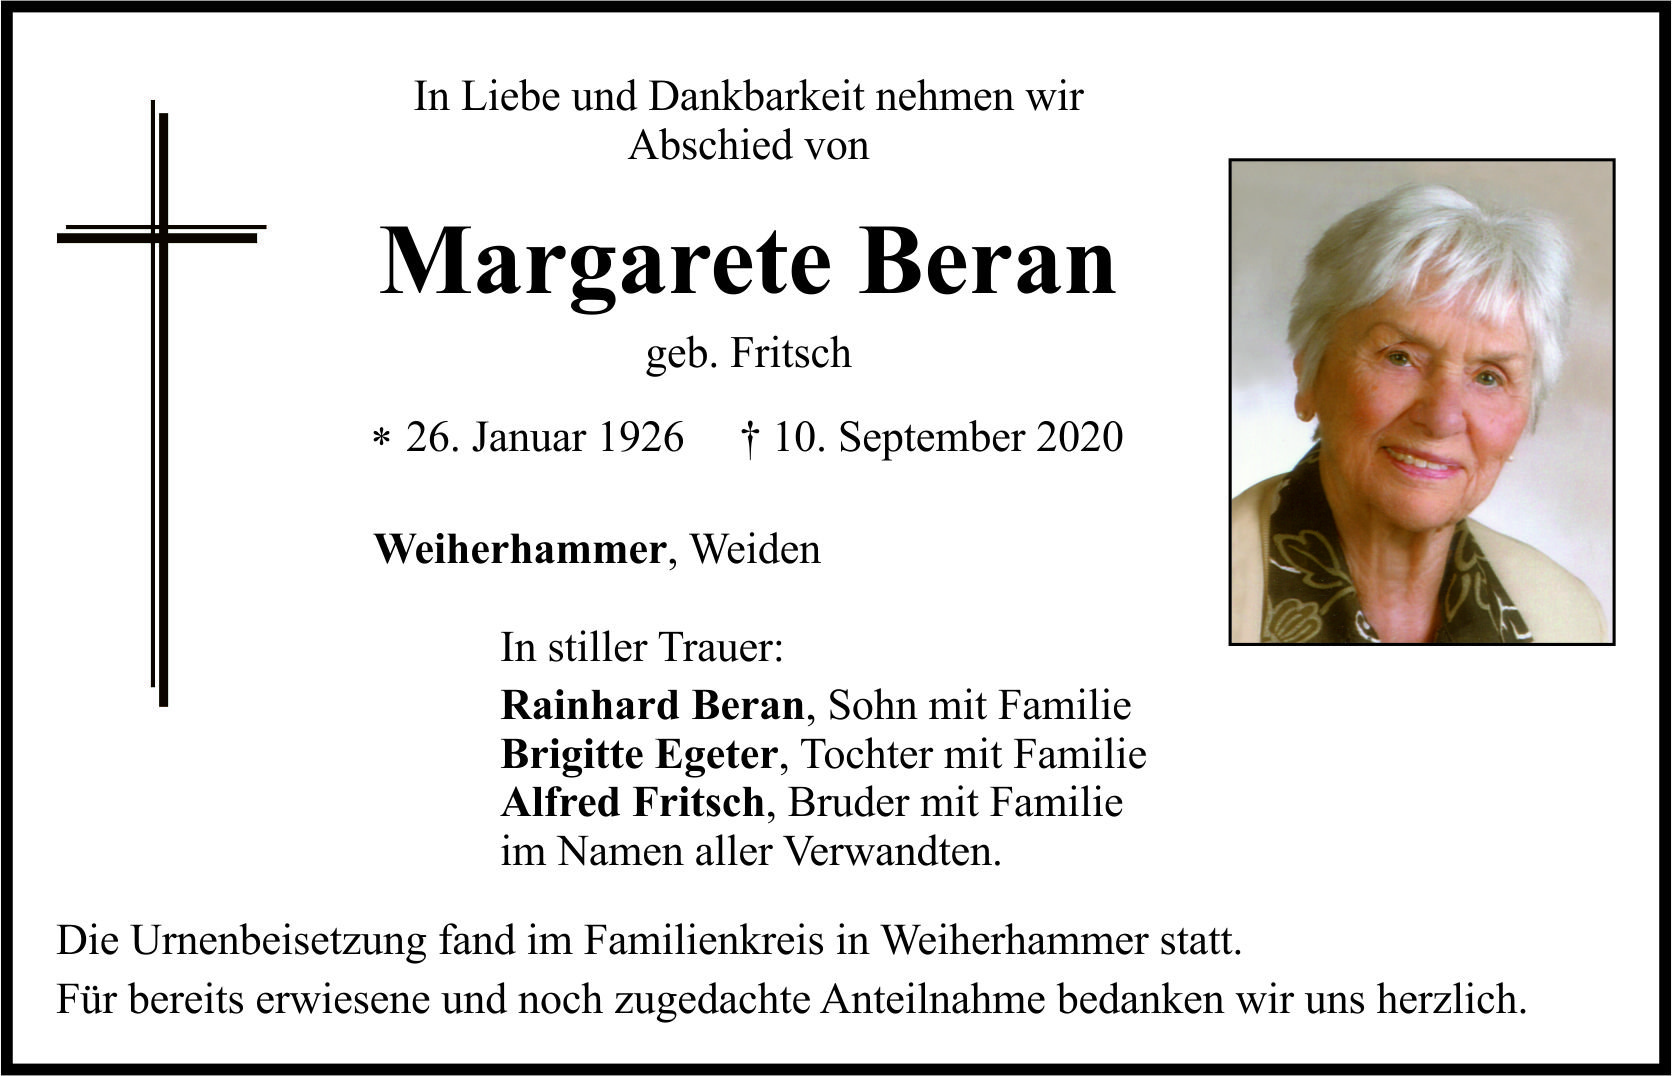 Traueranzeige Margarete Beran, Weiherhammer